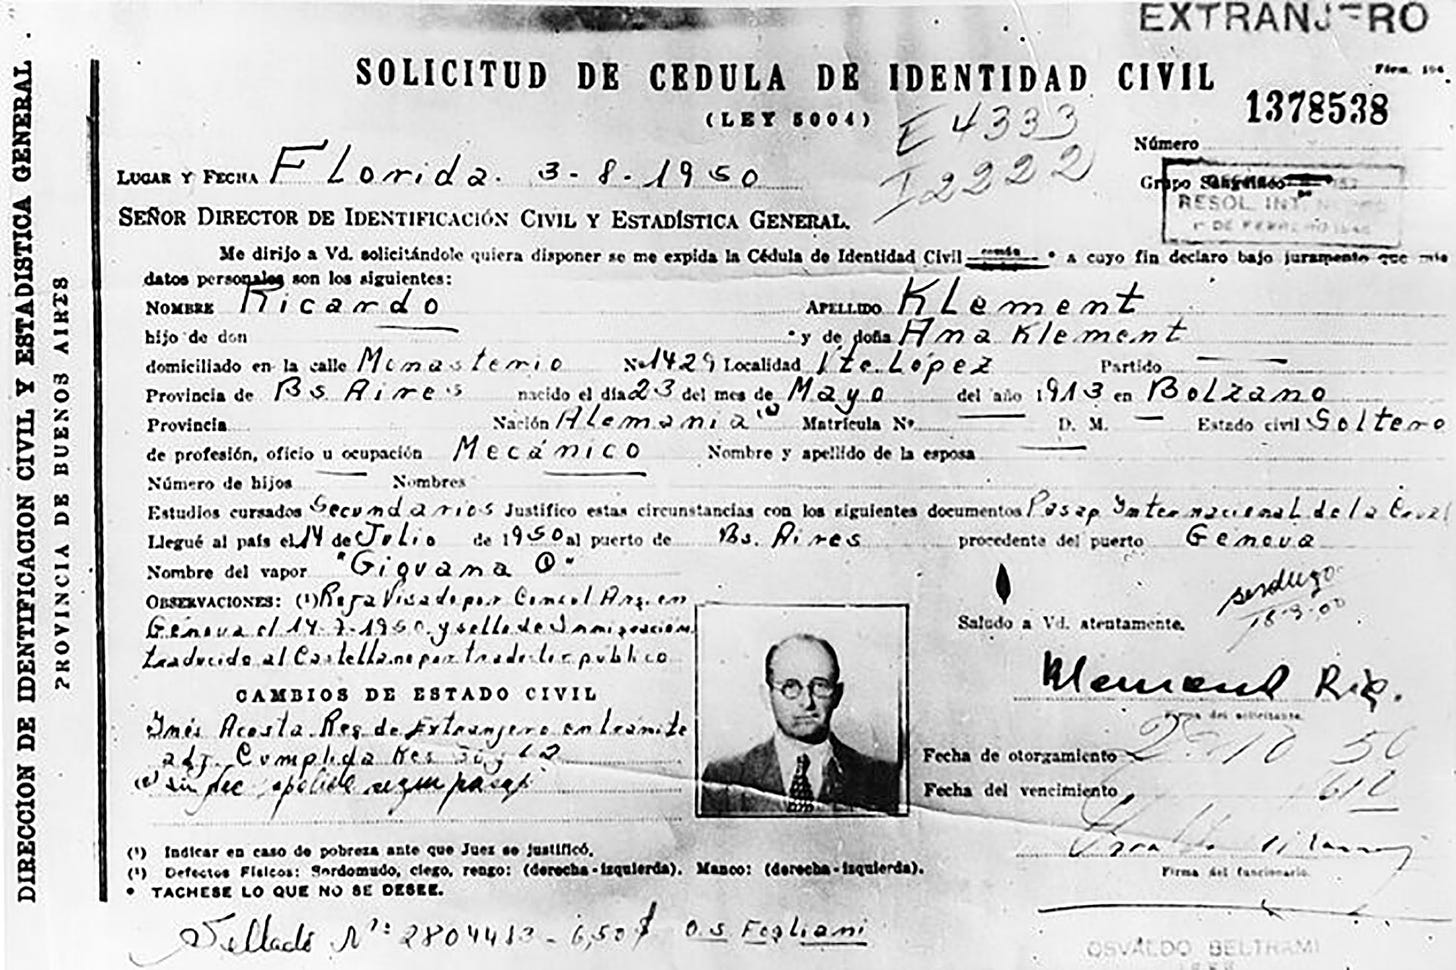 La solicitud de Cédula de Identidad de Eichmann bajo el nombre de Ricardo Klement.